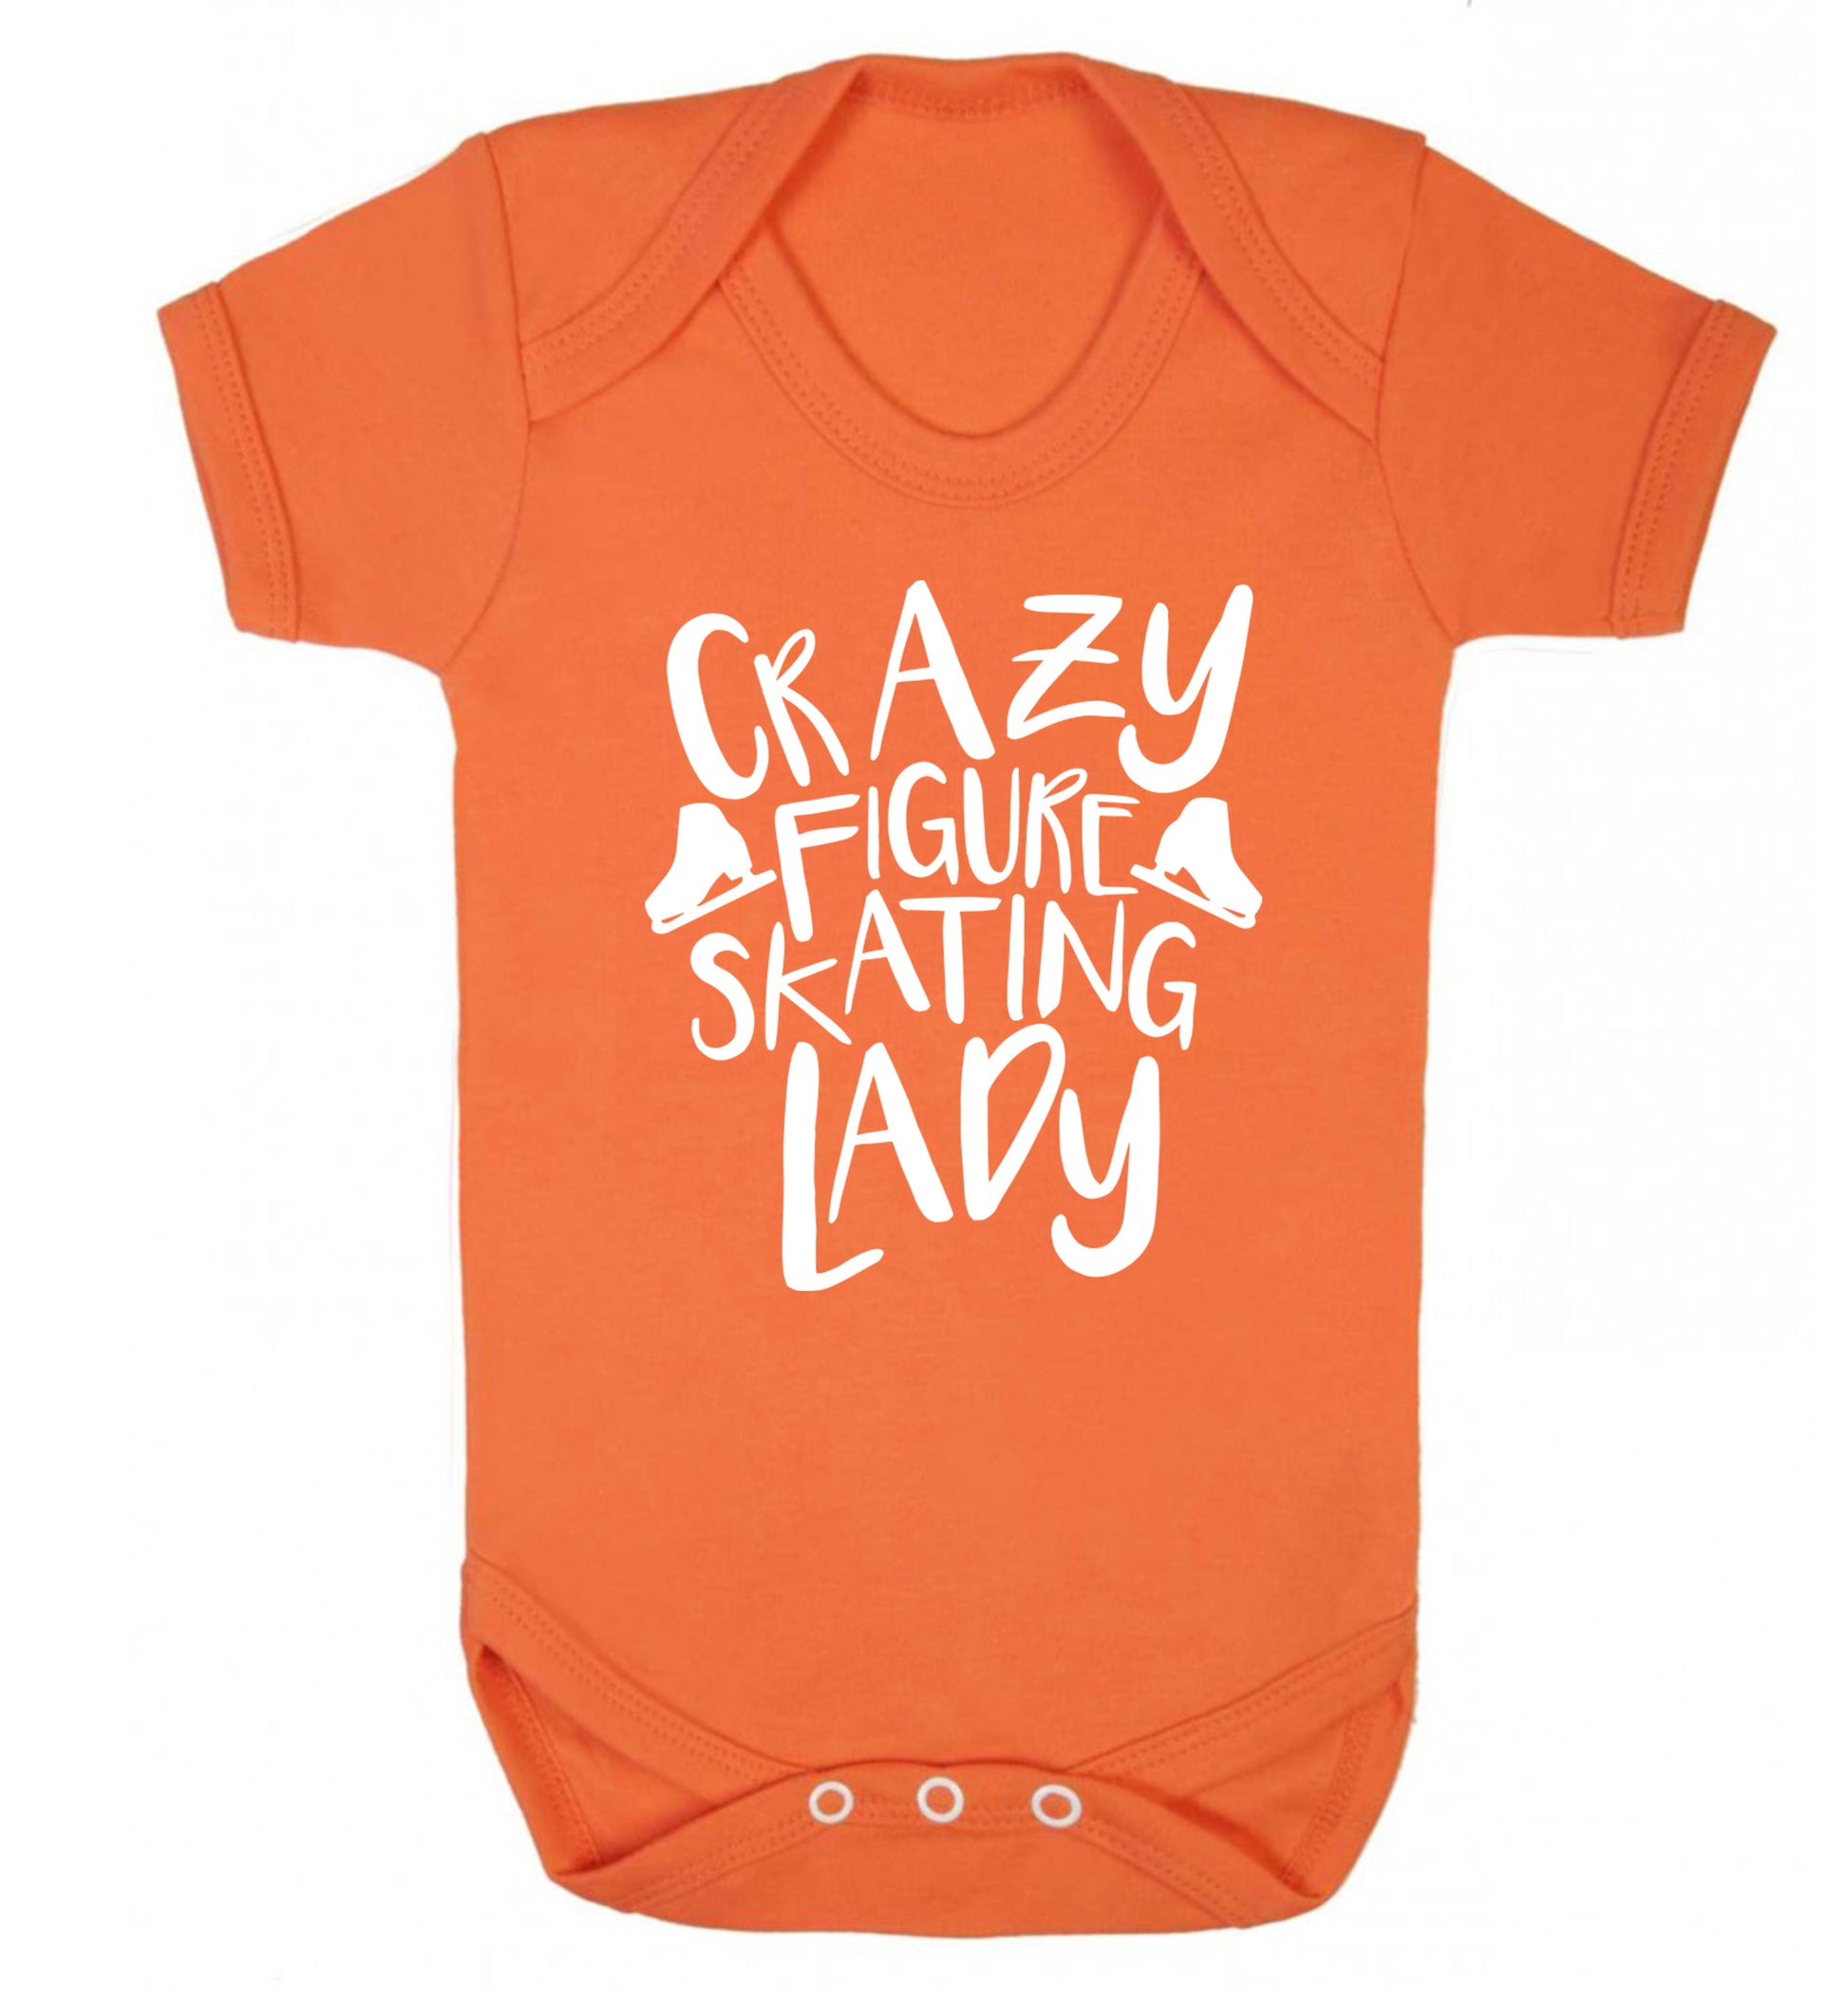 Crazy figure skating lady Baby Vest orange 18-24 months